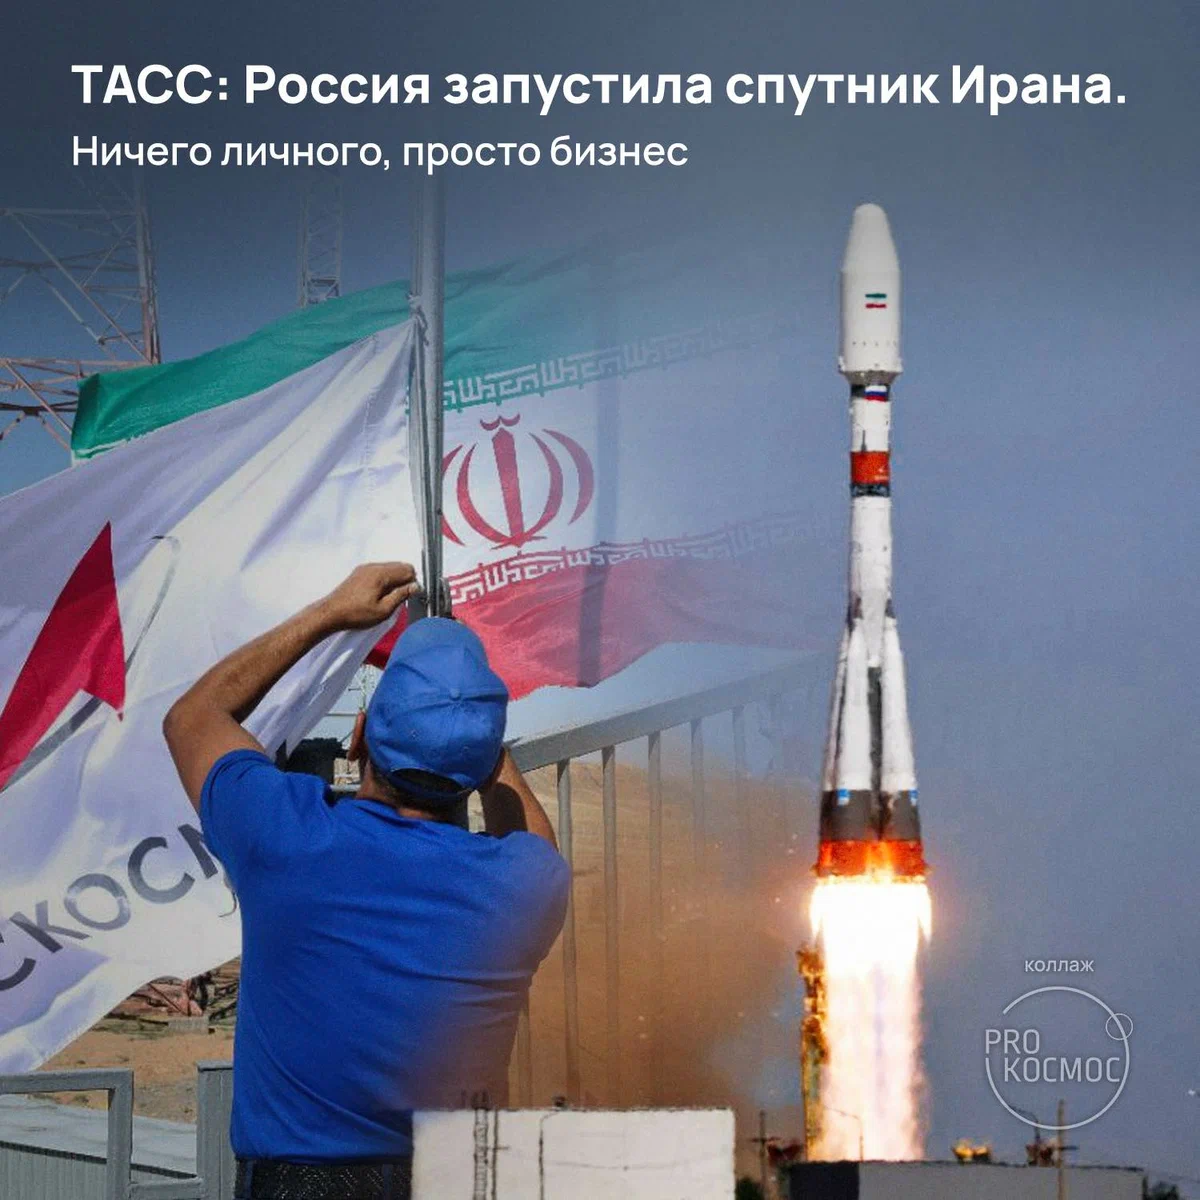 ТАСС: Россия запустила спутник Ирана. Ничего личного, просто бизнес height=1200px width=1200px